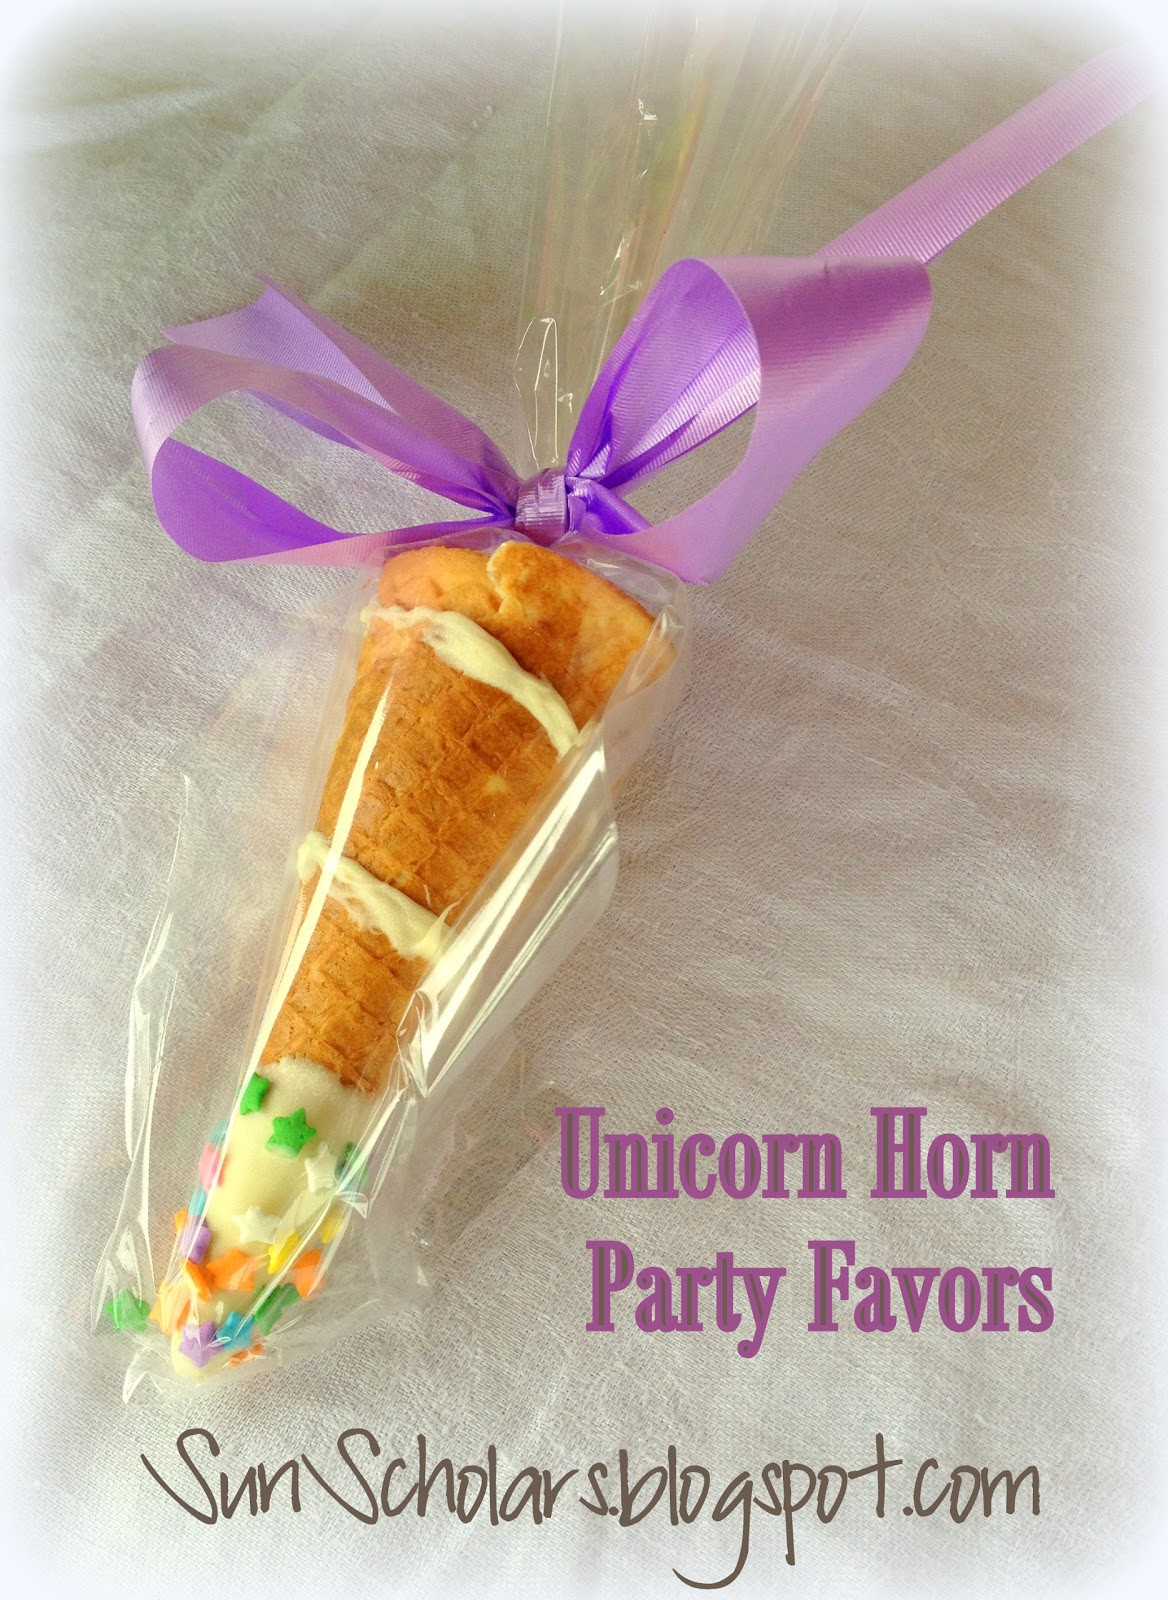 Unicorn Food Party Favor Ideas
 Hansen Sons Unicorn Horn Party Favors